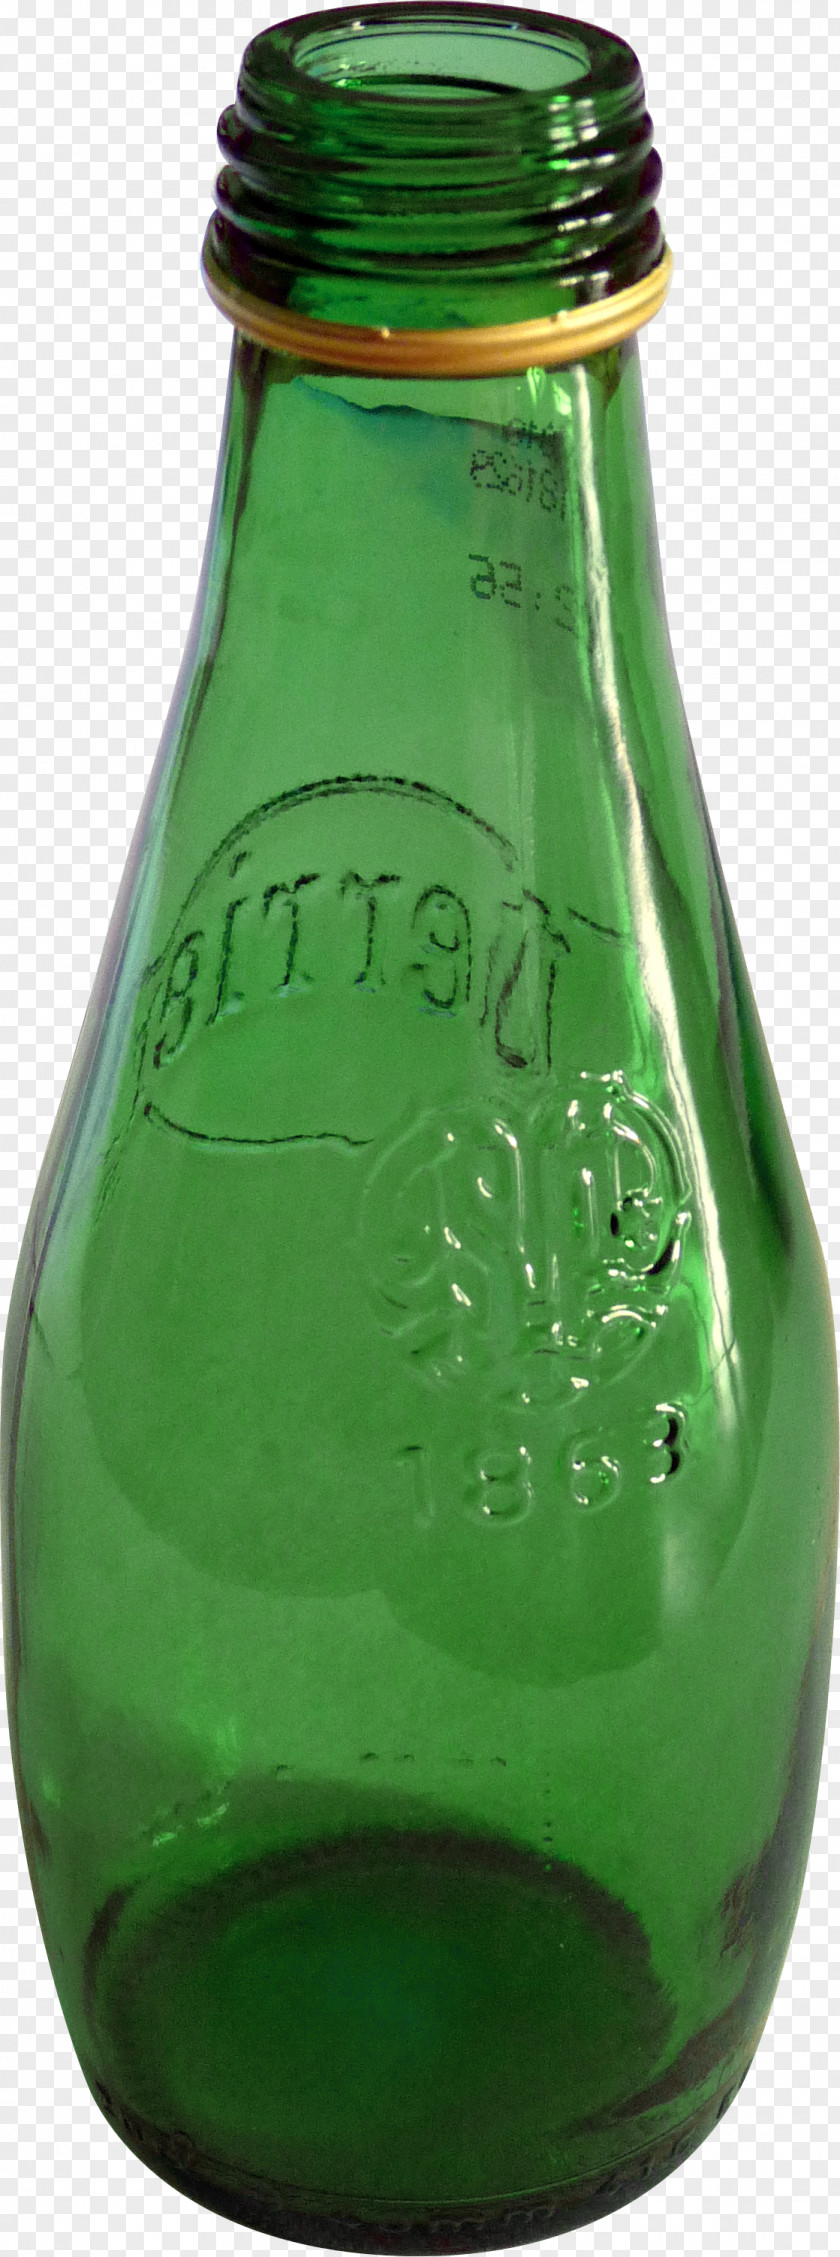 Green Glass Bottles Beer Bottle PNG